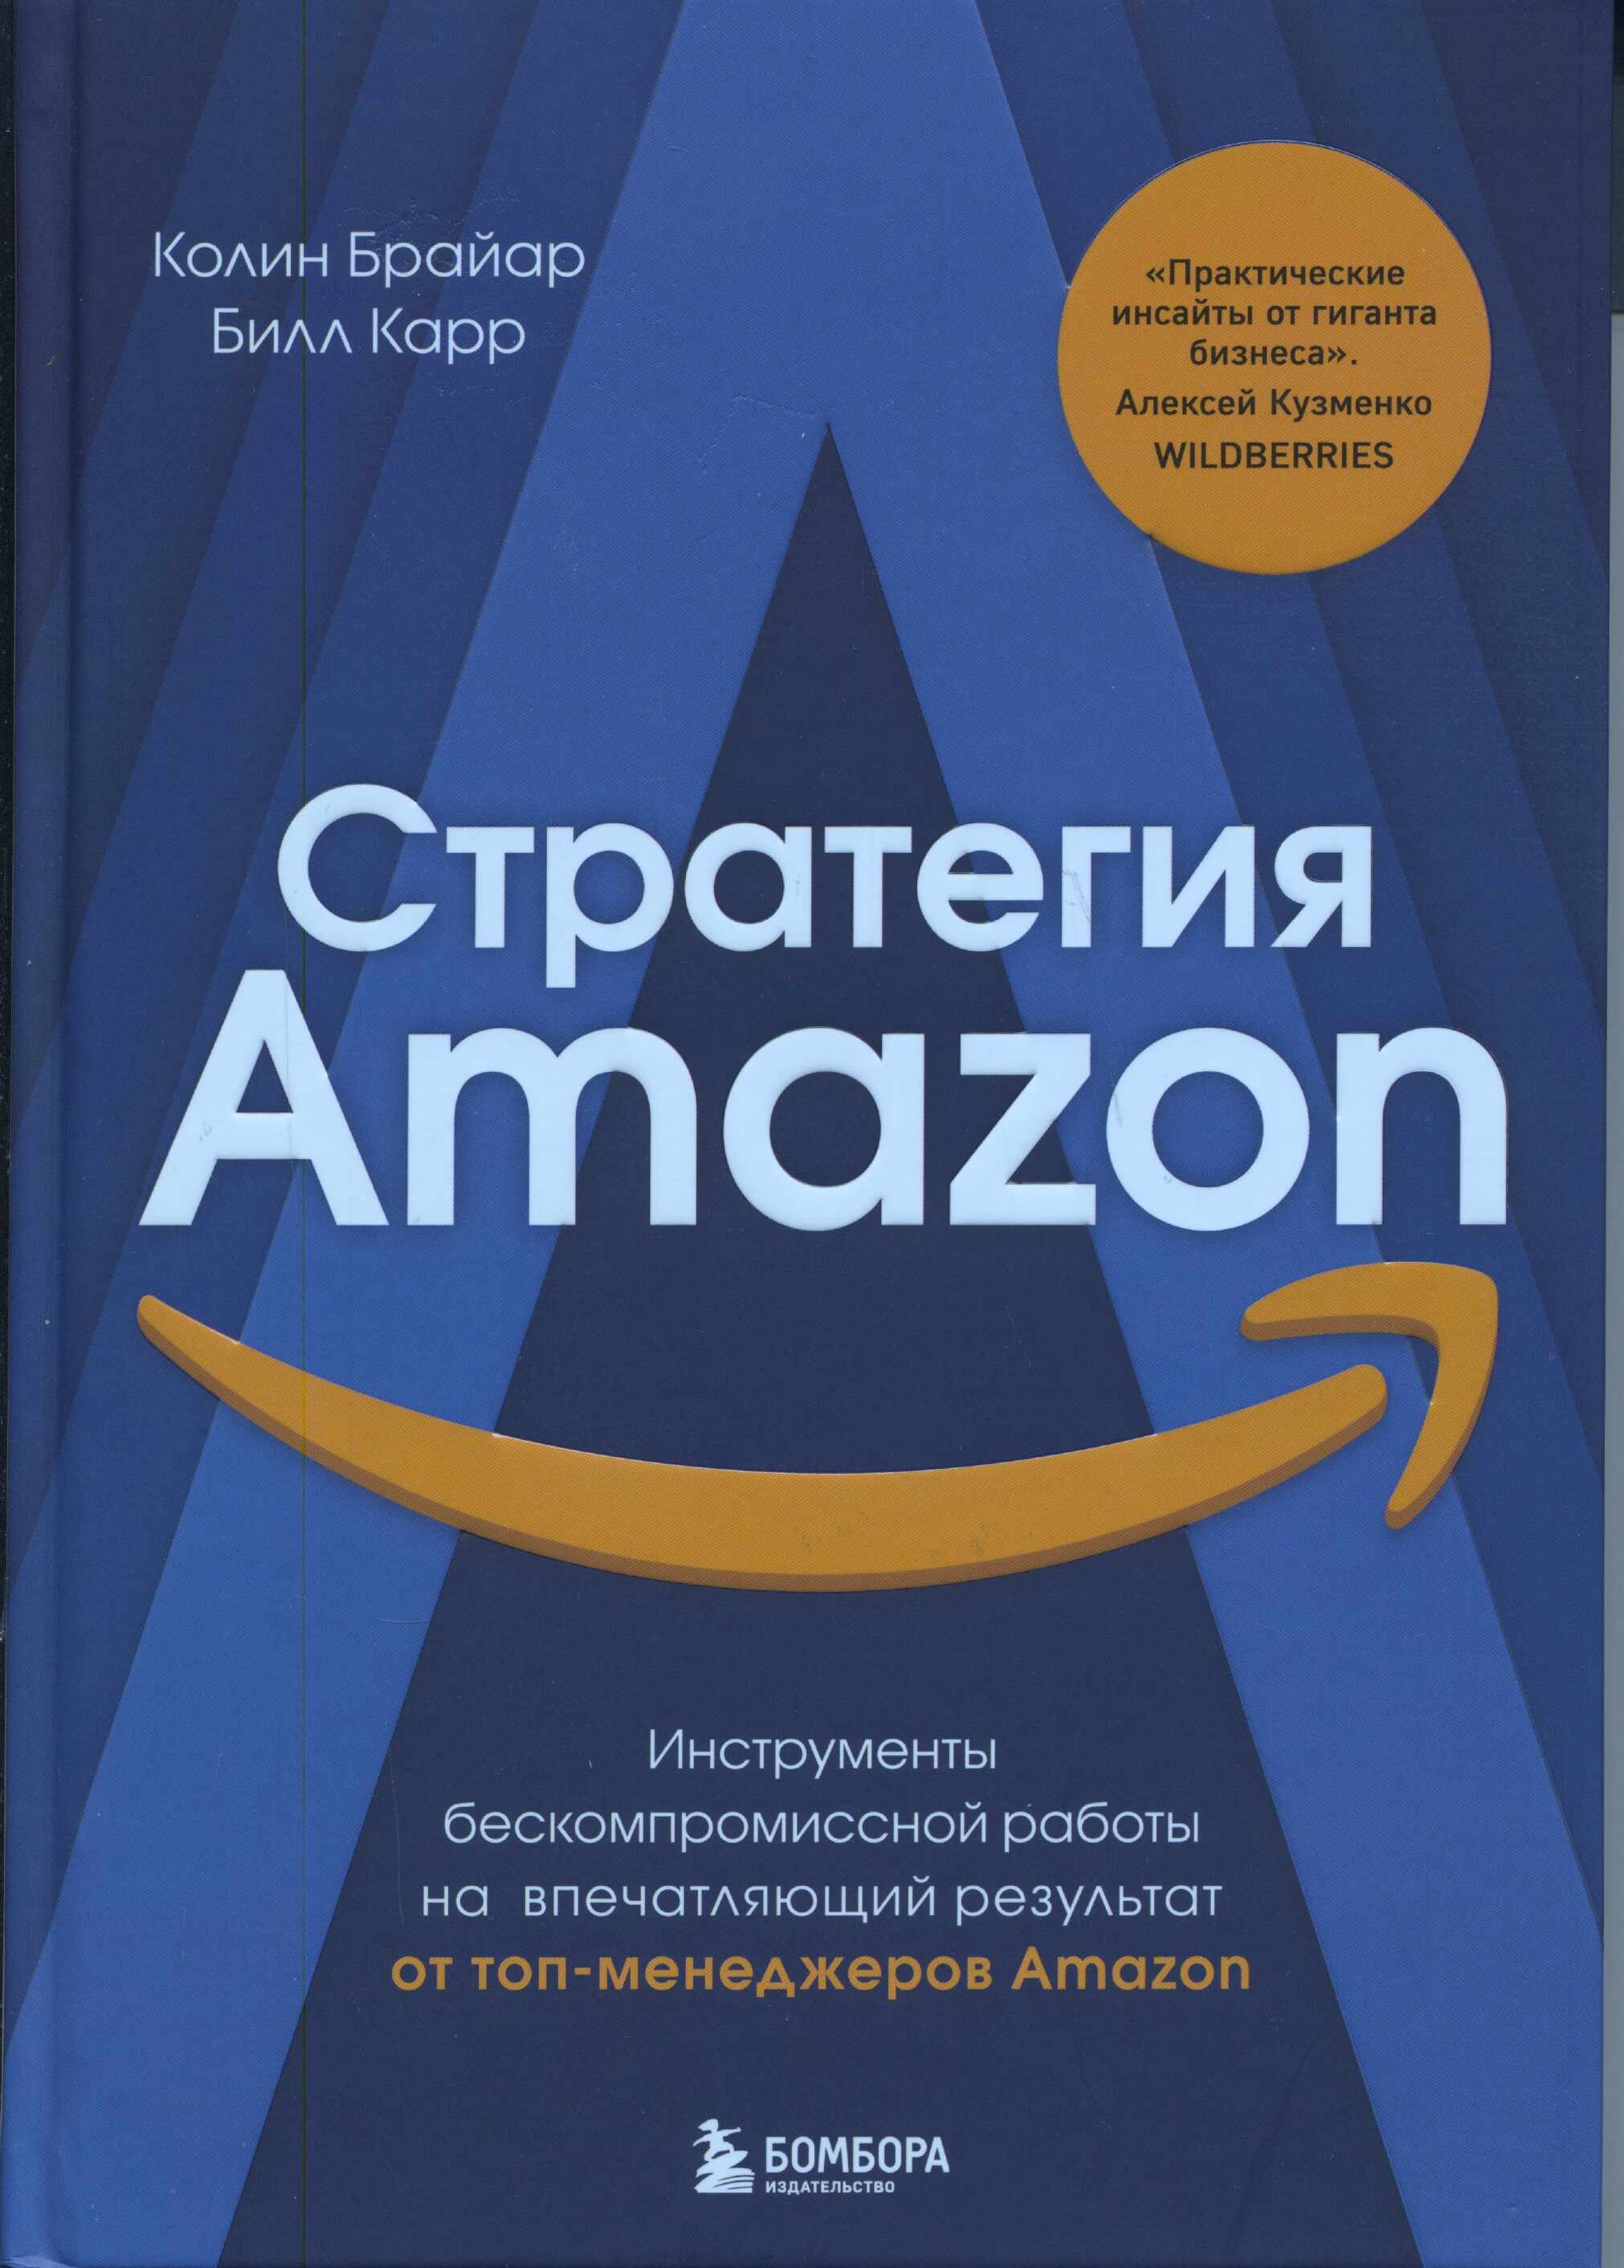 Стратегия Amazon: инструменты бескомпромиссной работы на впечатляющий результат от топ-менеджеров Amazon